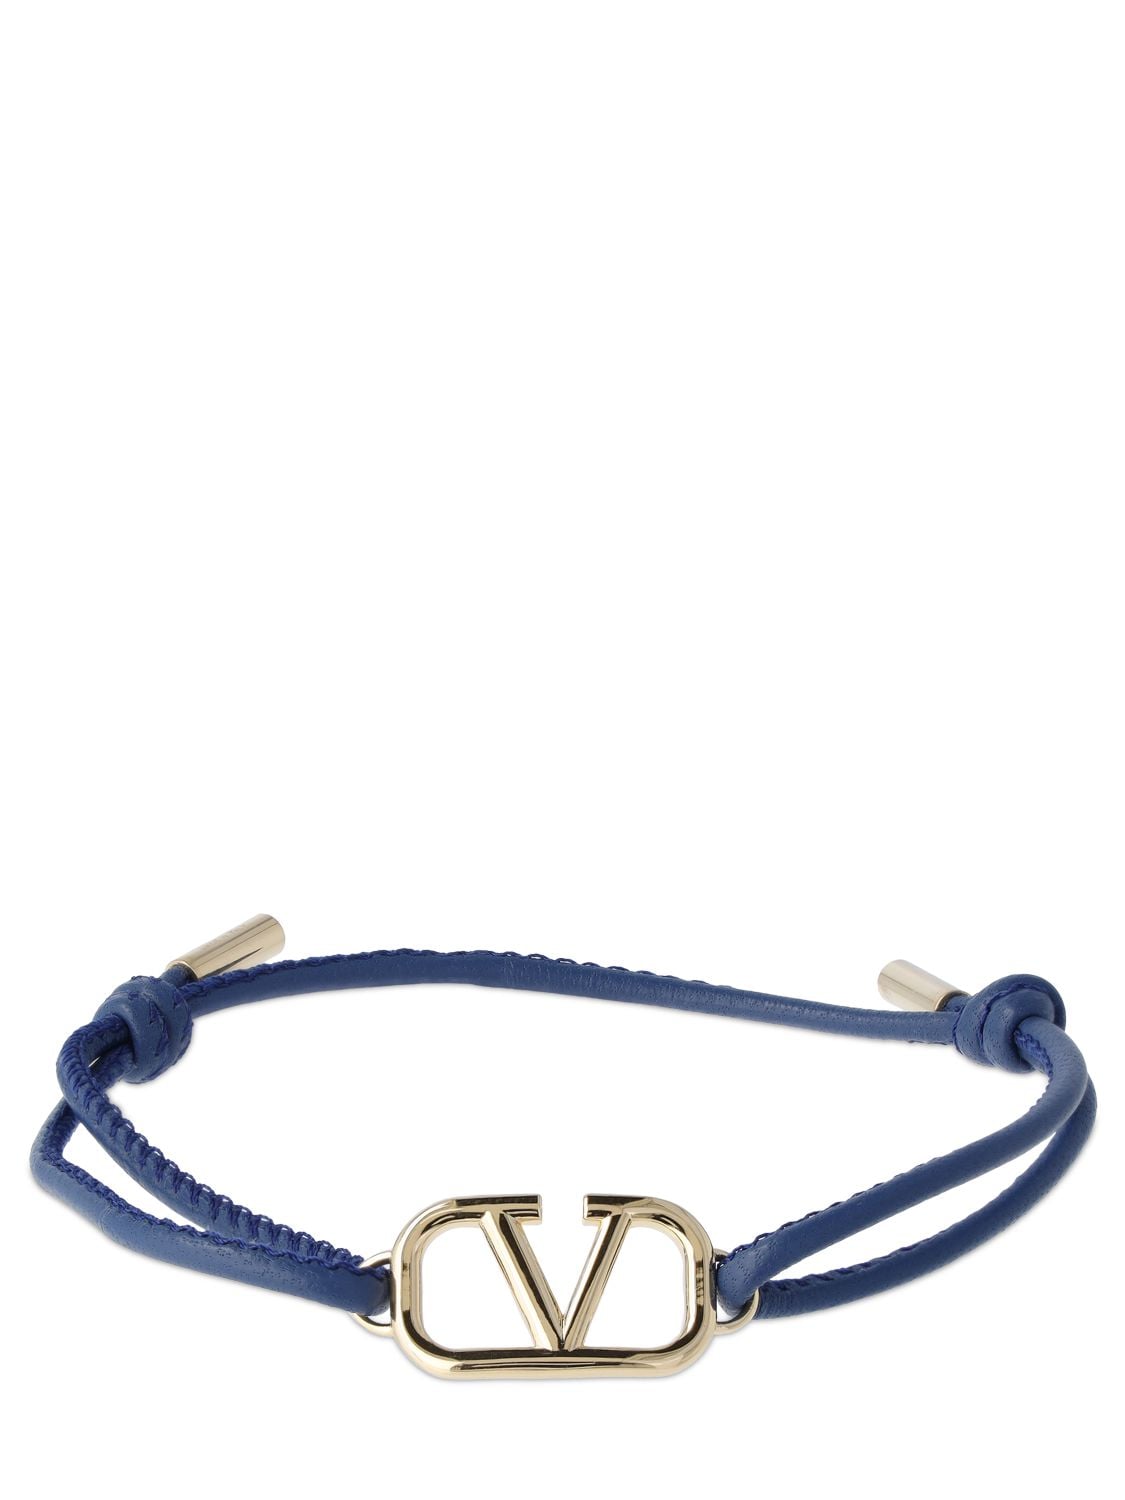 Image of V Logo Signature Leather Cord Bracelet